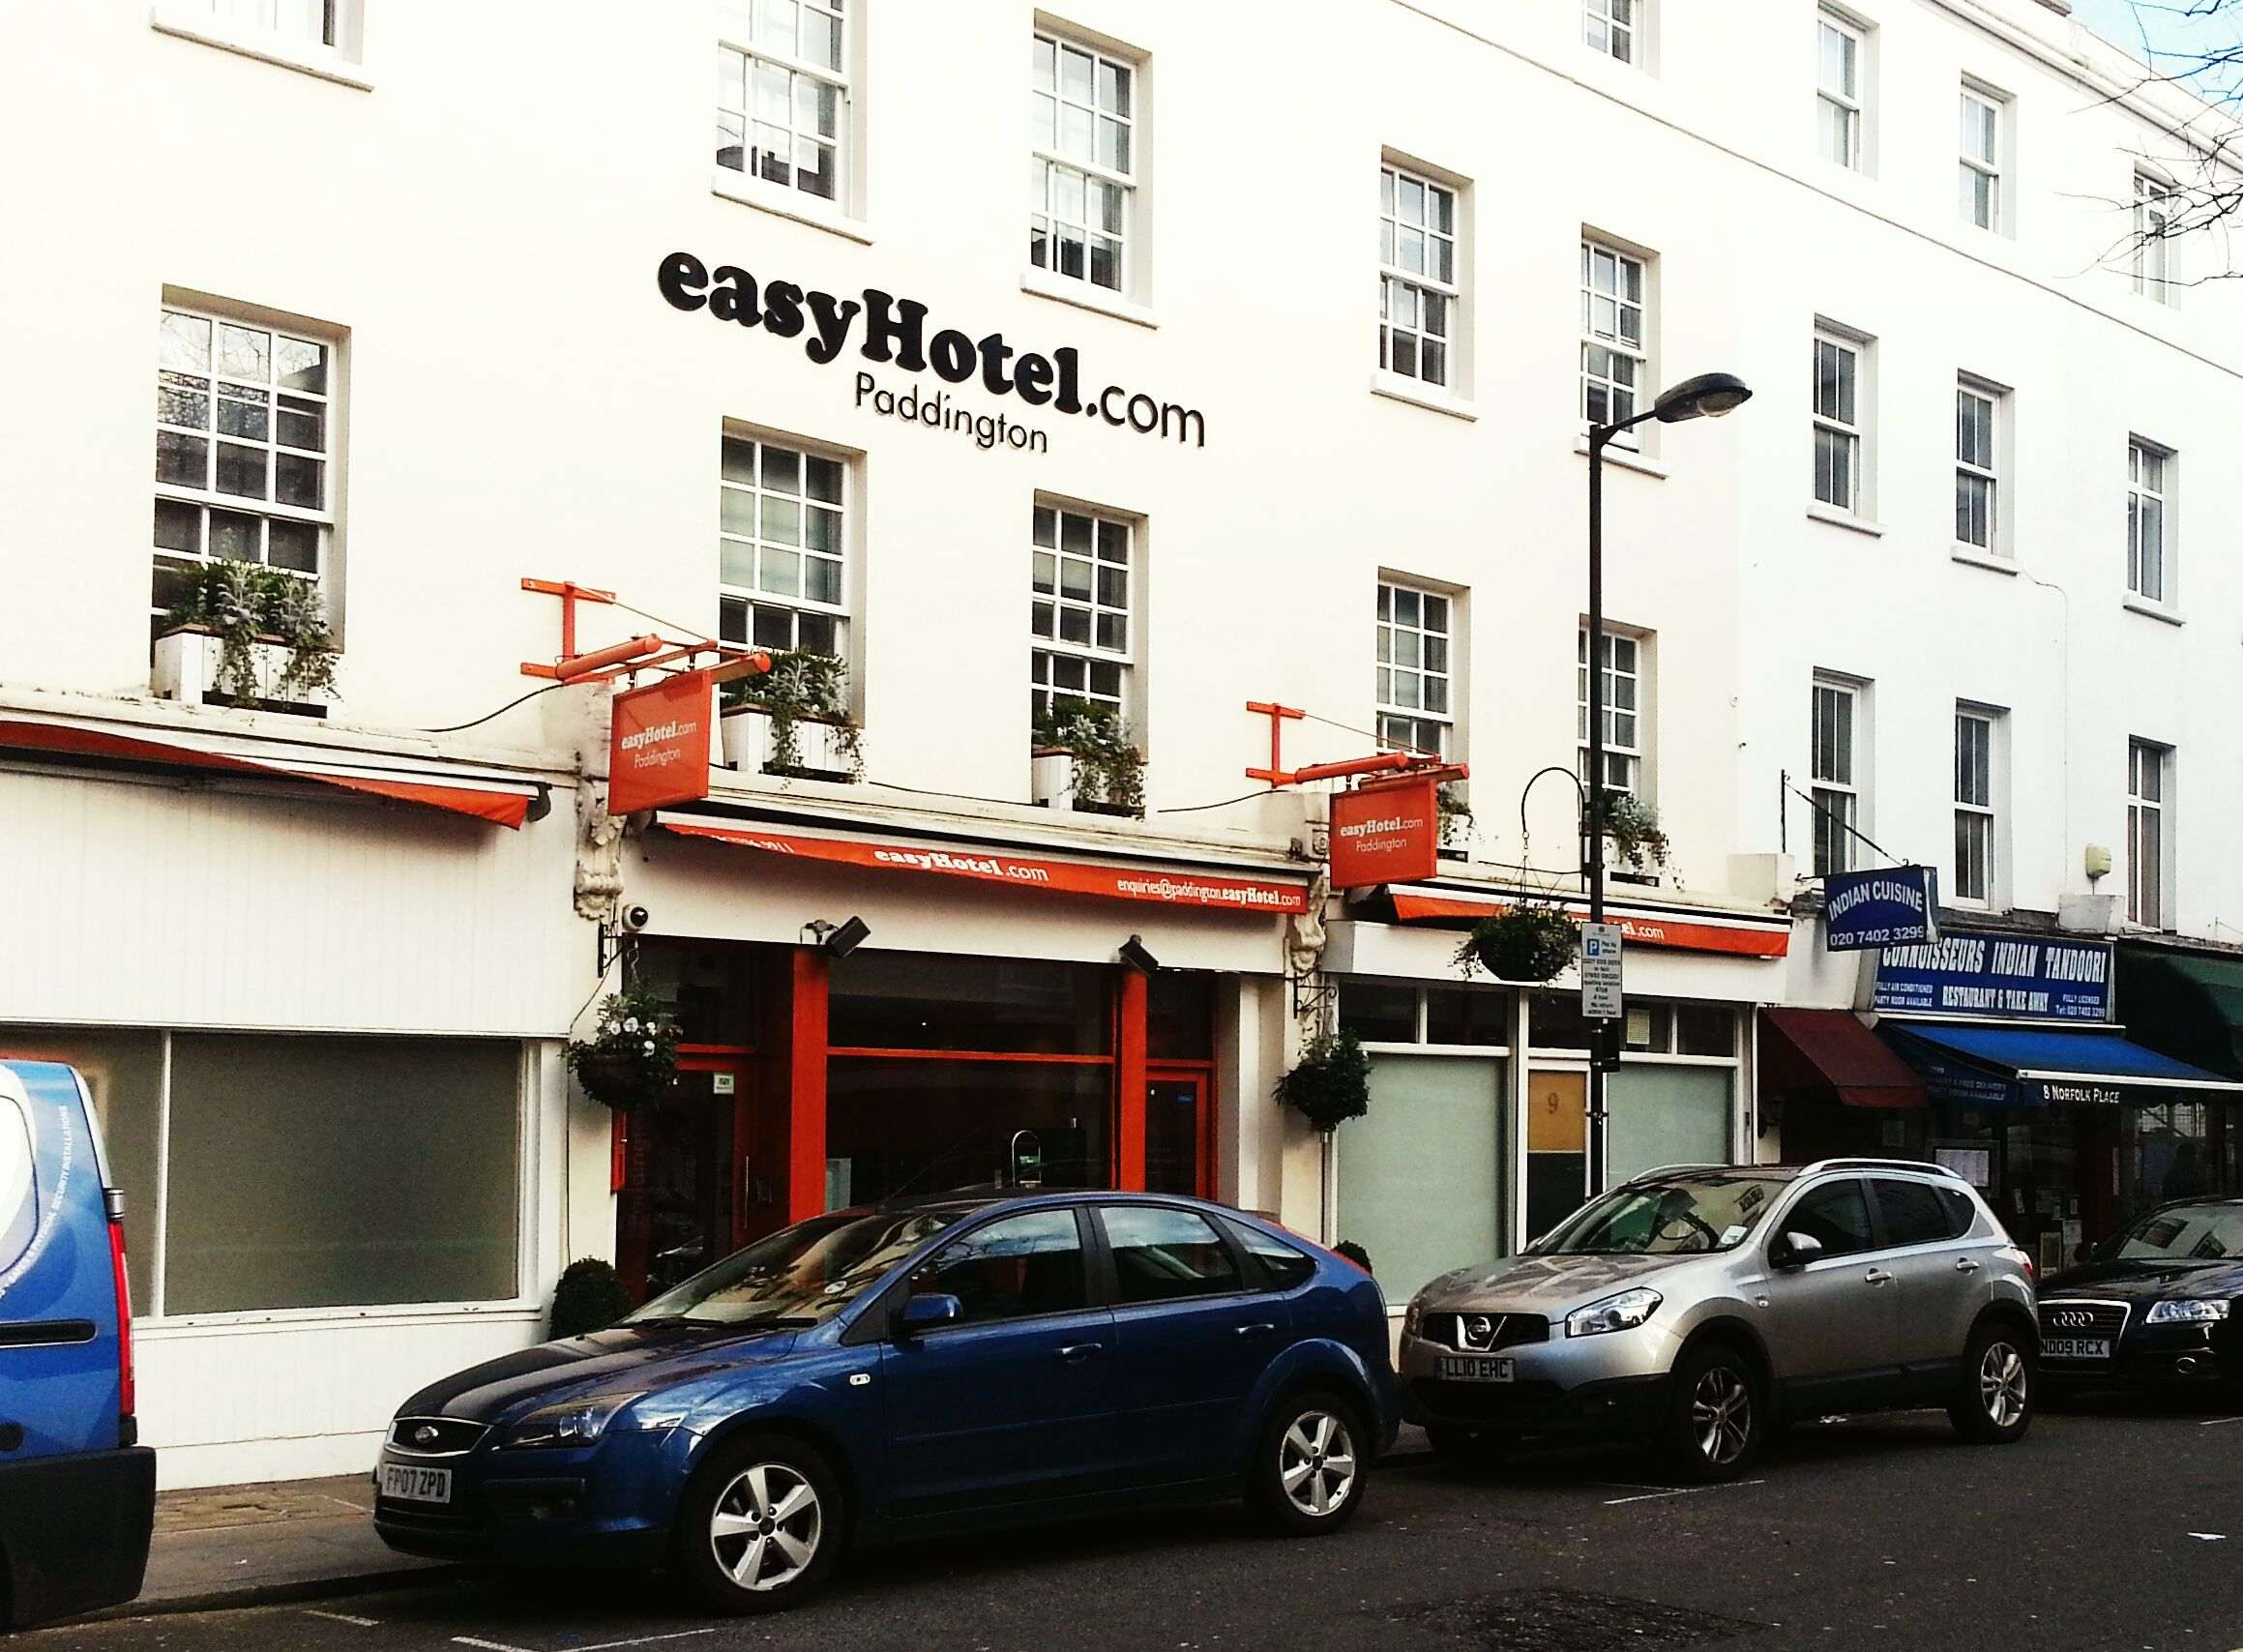 EasyHotel invertirá 15 millones en un hotel de l'Hospitalet